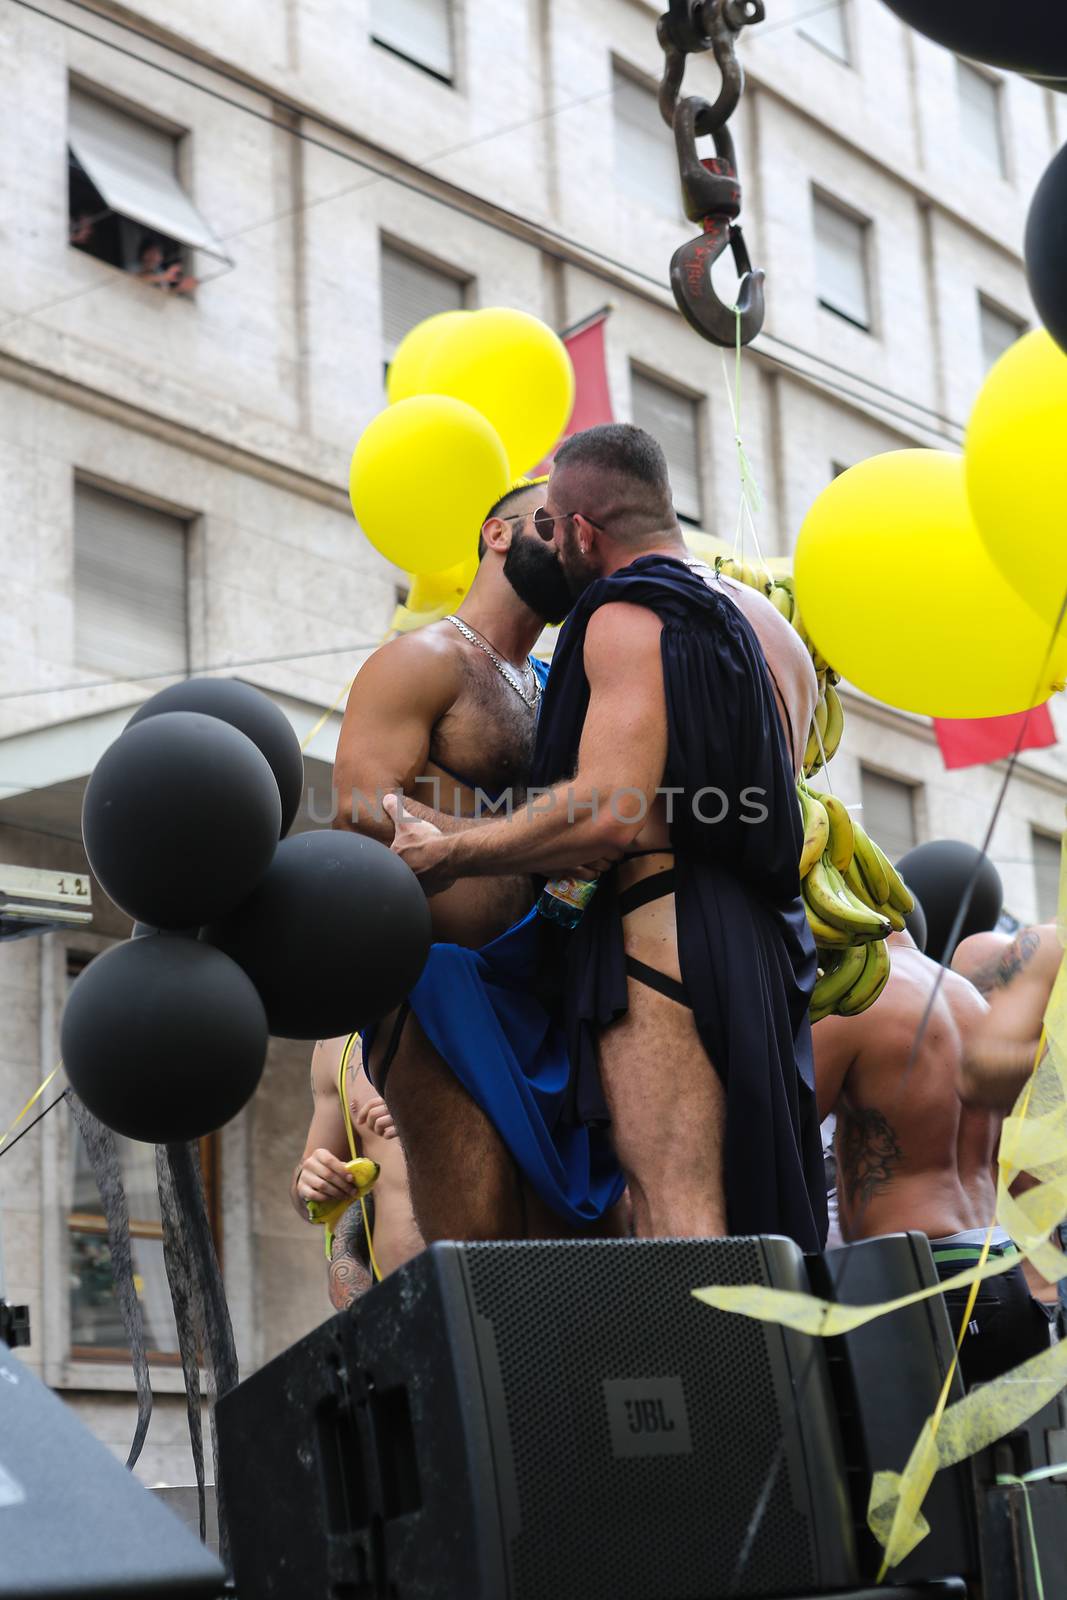  Rome Gay Pride by wjarek